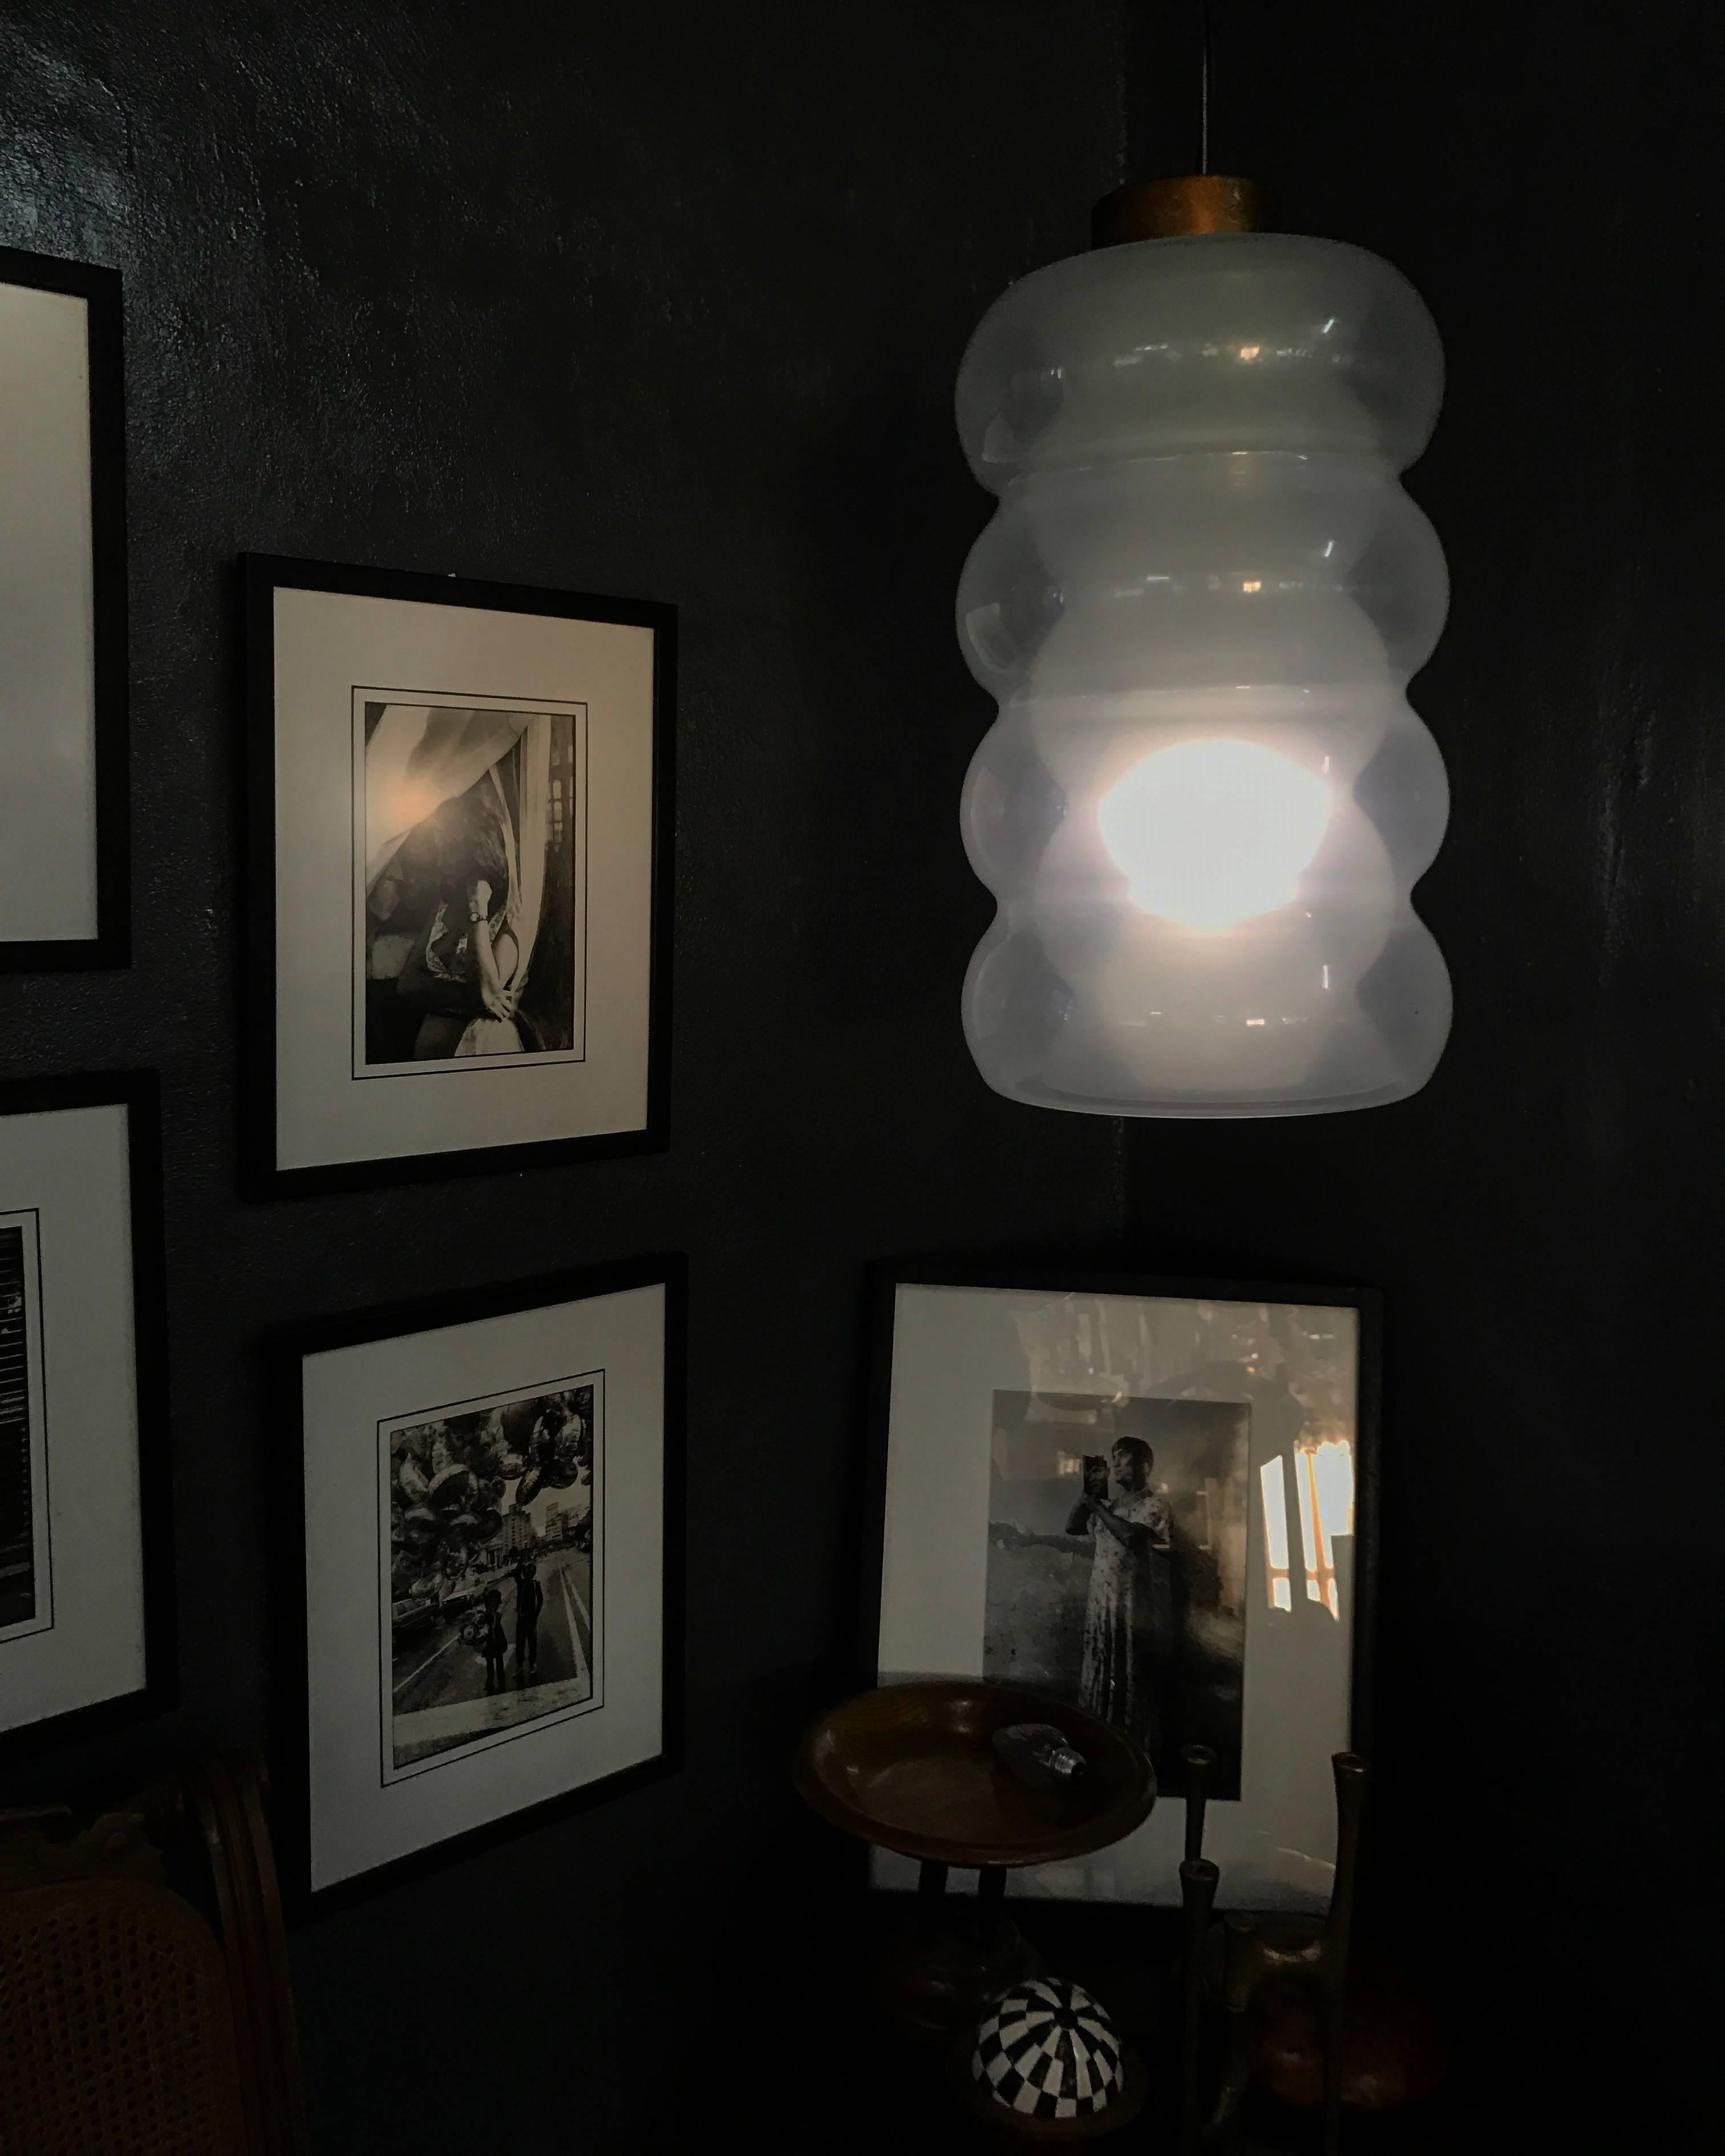 Magnifique et rare lampe suspendue de style moderne du milieu du siècle par Mazzega, conçue par Carlo Nason, vers 1960, Murano, Italie.
La lampe seule mesure 18 pouces de haut et a un diamètre de 12 pouces.
Constitué de trois pièces distinctes